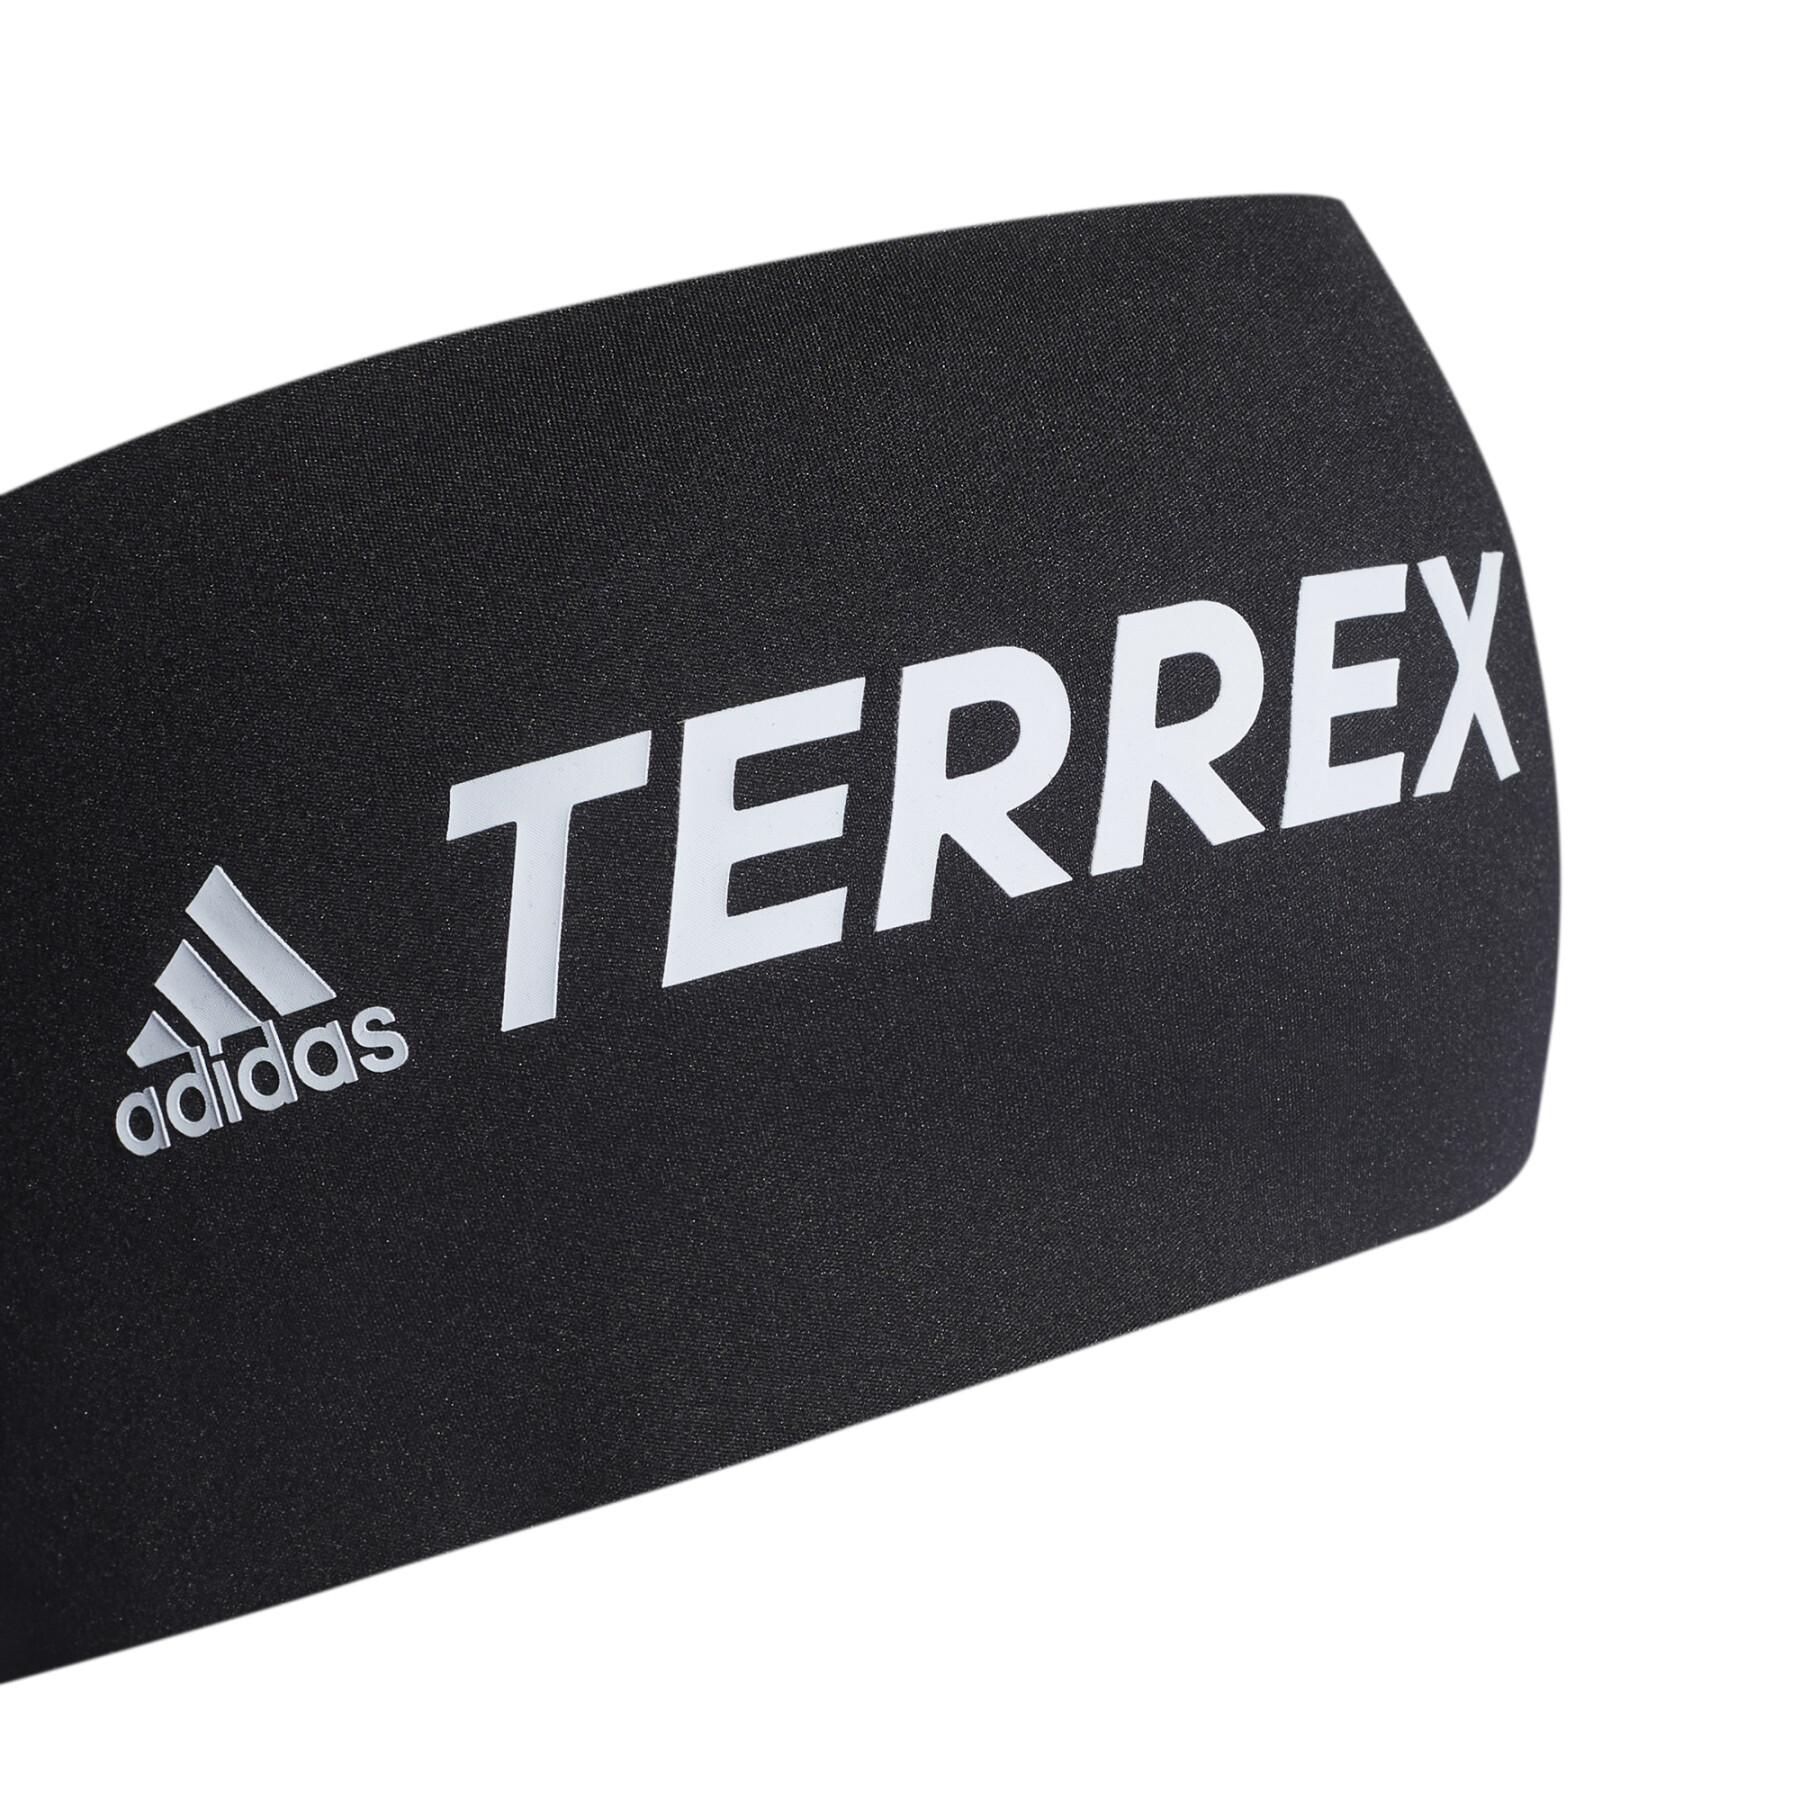 Stirnband adidas Terrex